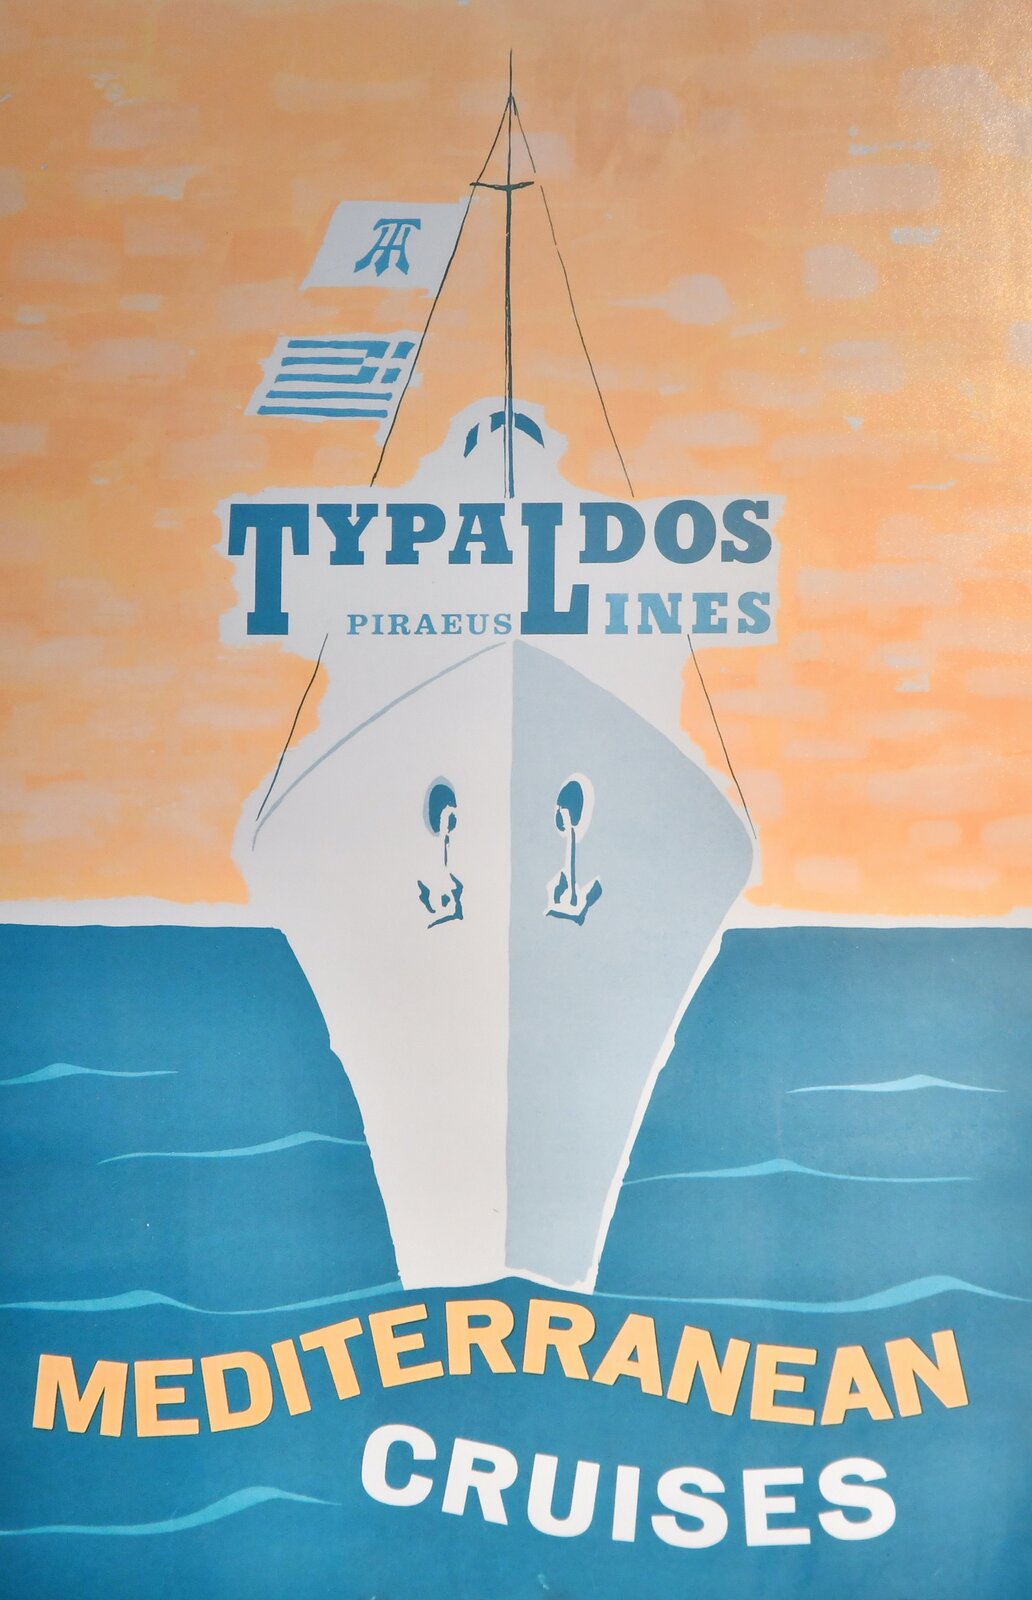 Typaldos poster